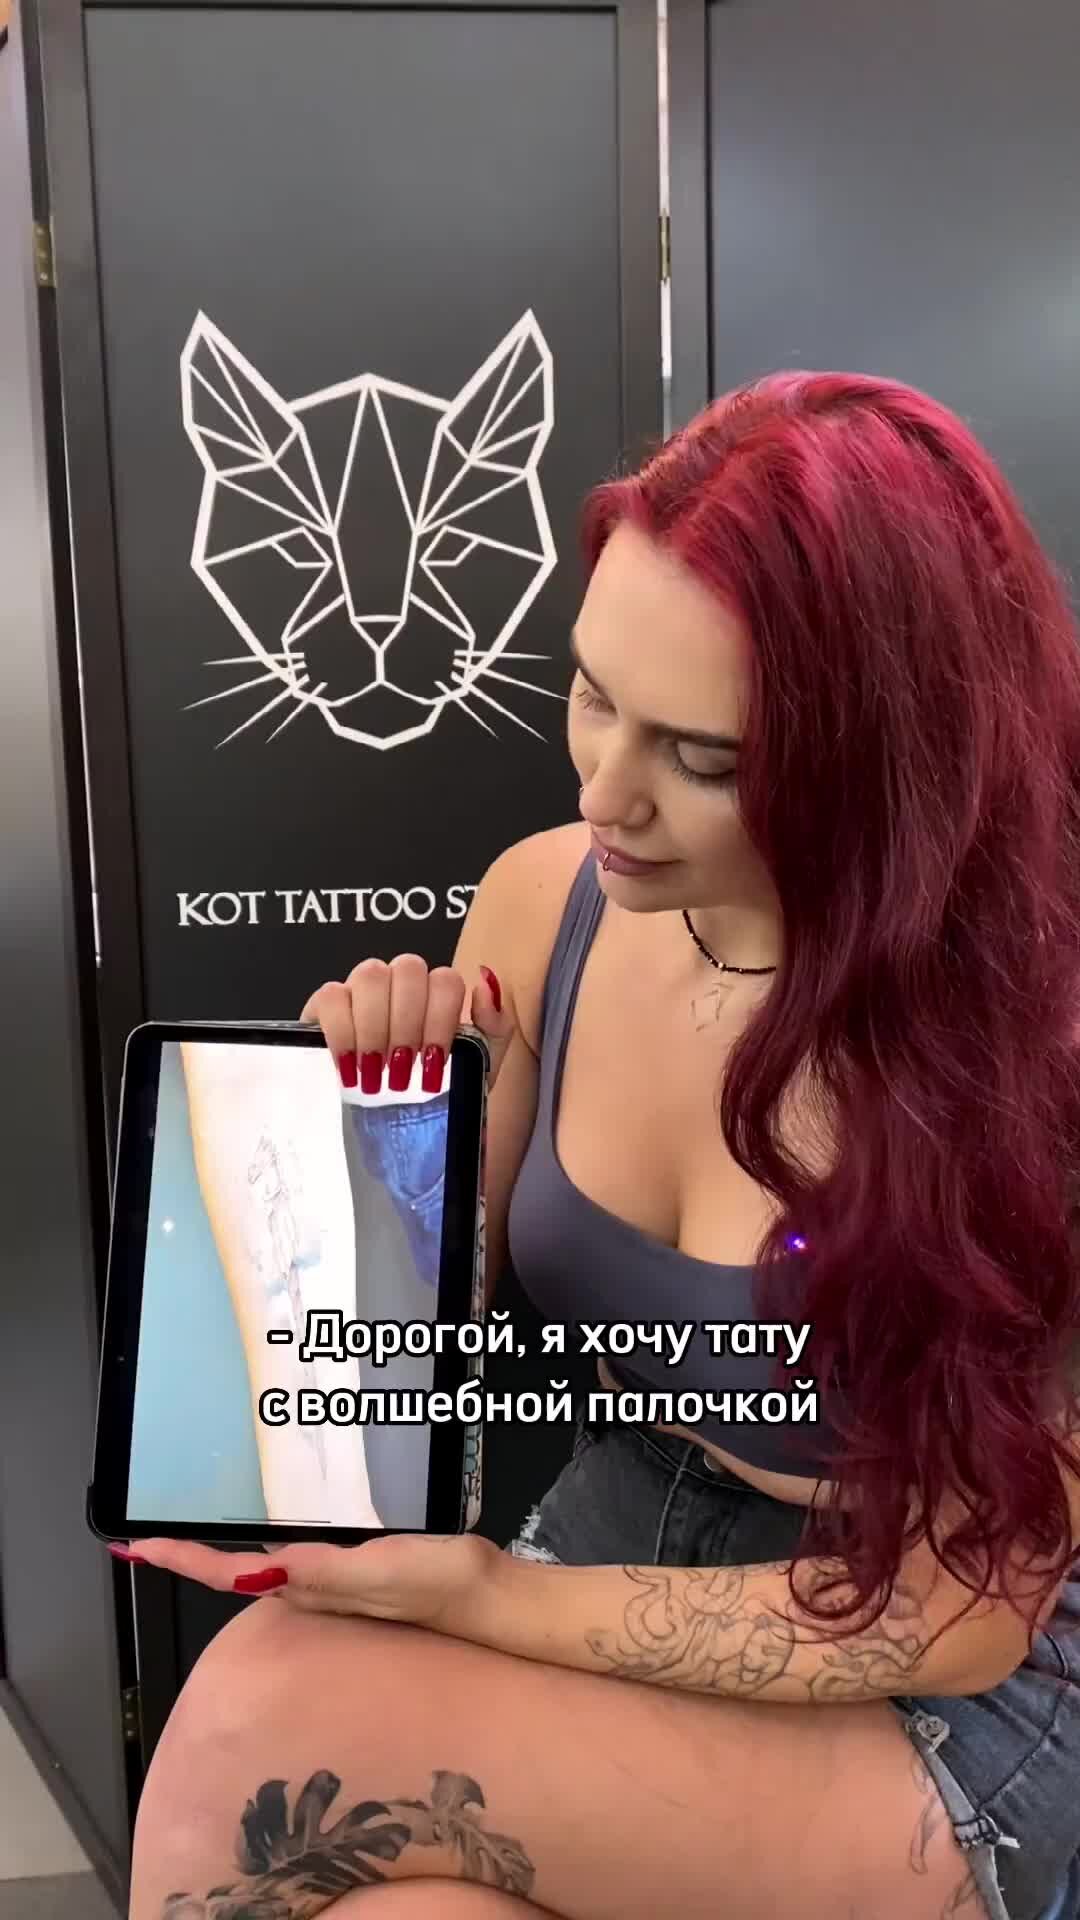 У женщины с рыжими волосами есть татуировка на руке